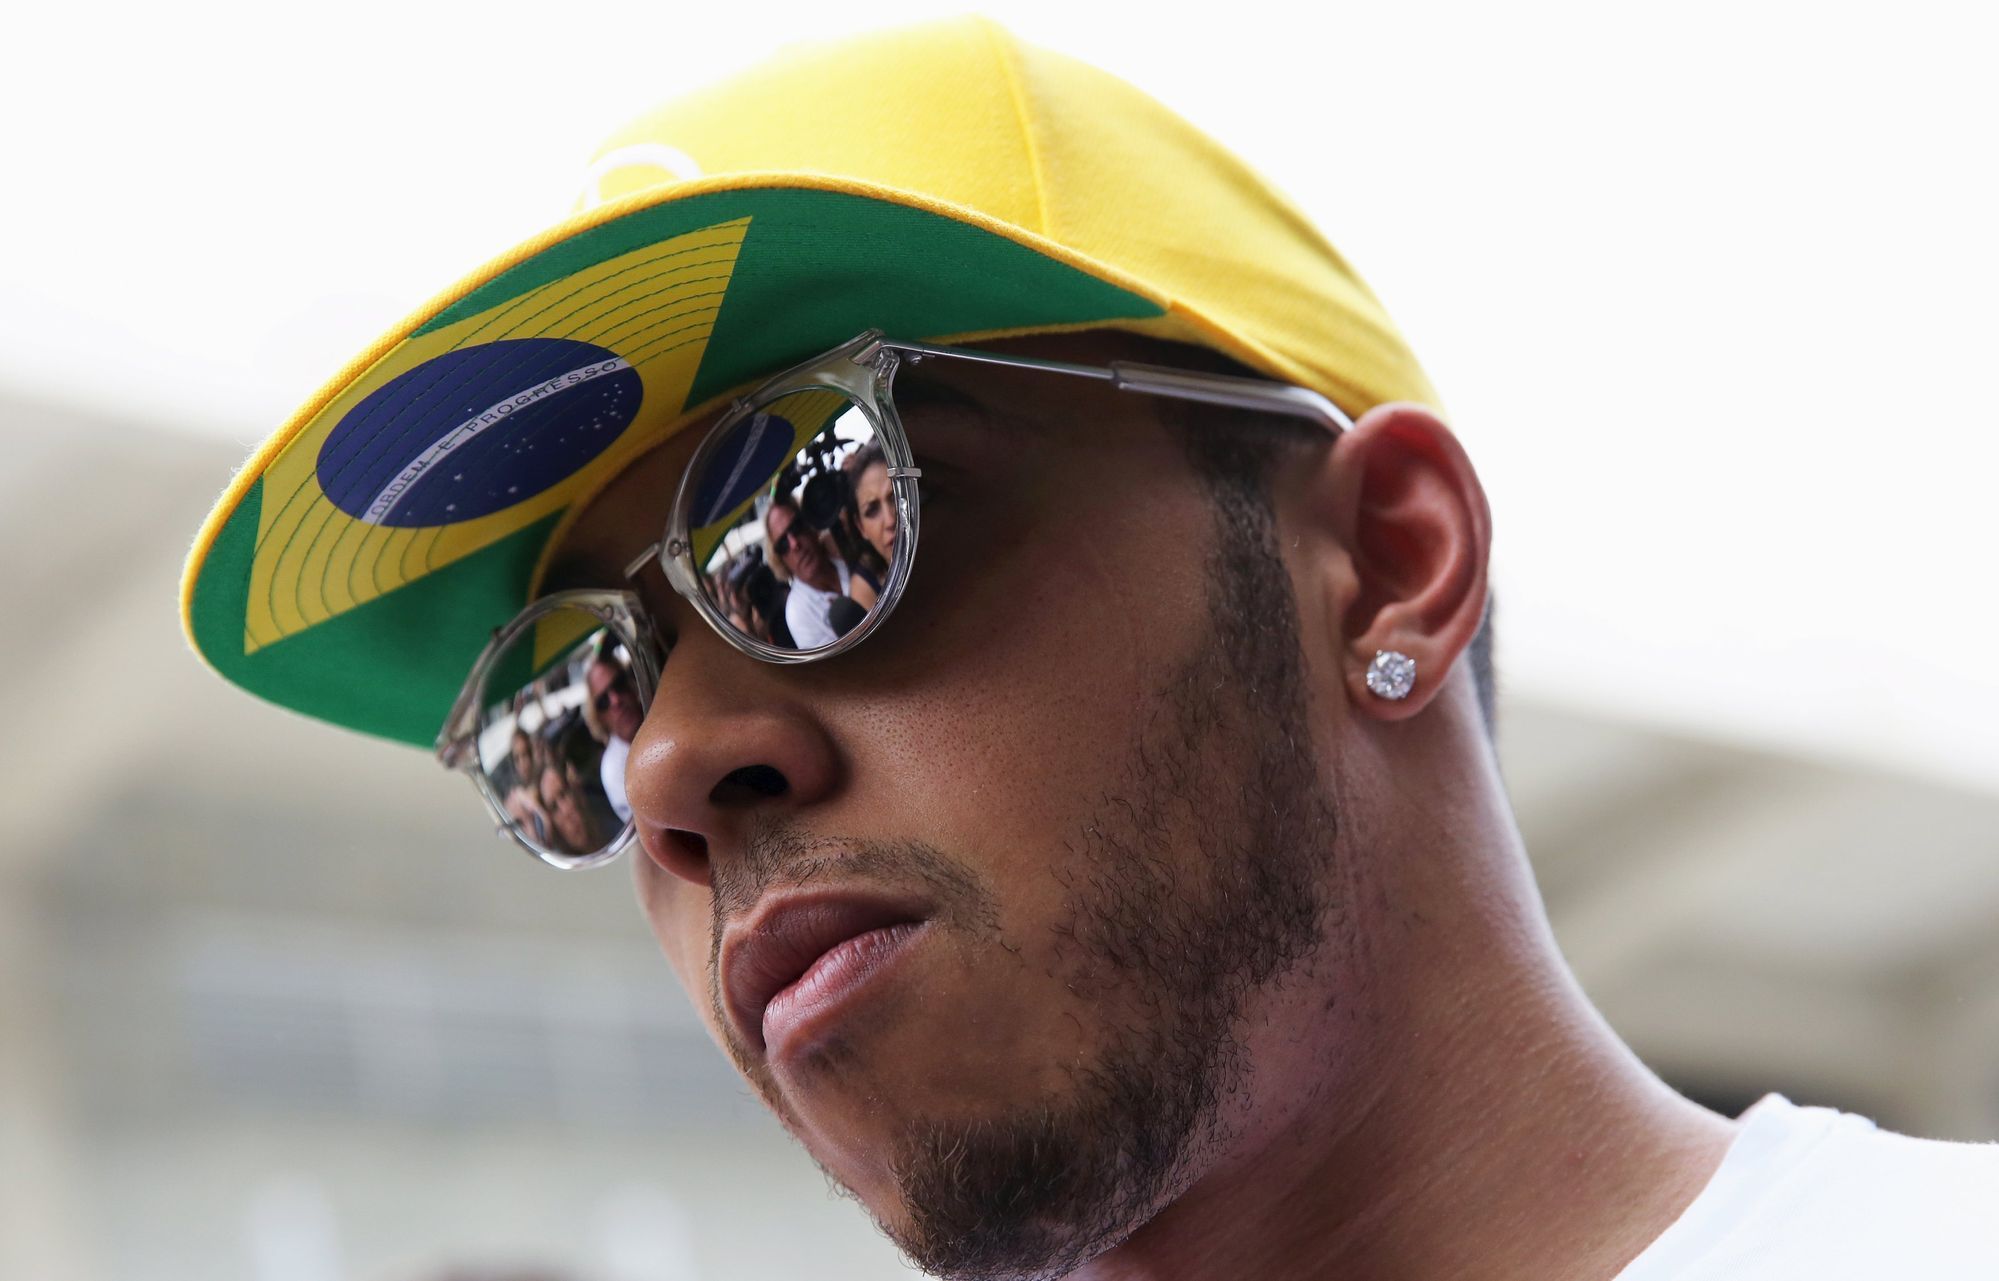 F1, VC Brazílie 2015: Lewis Hamilton,  Mercedes